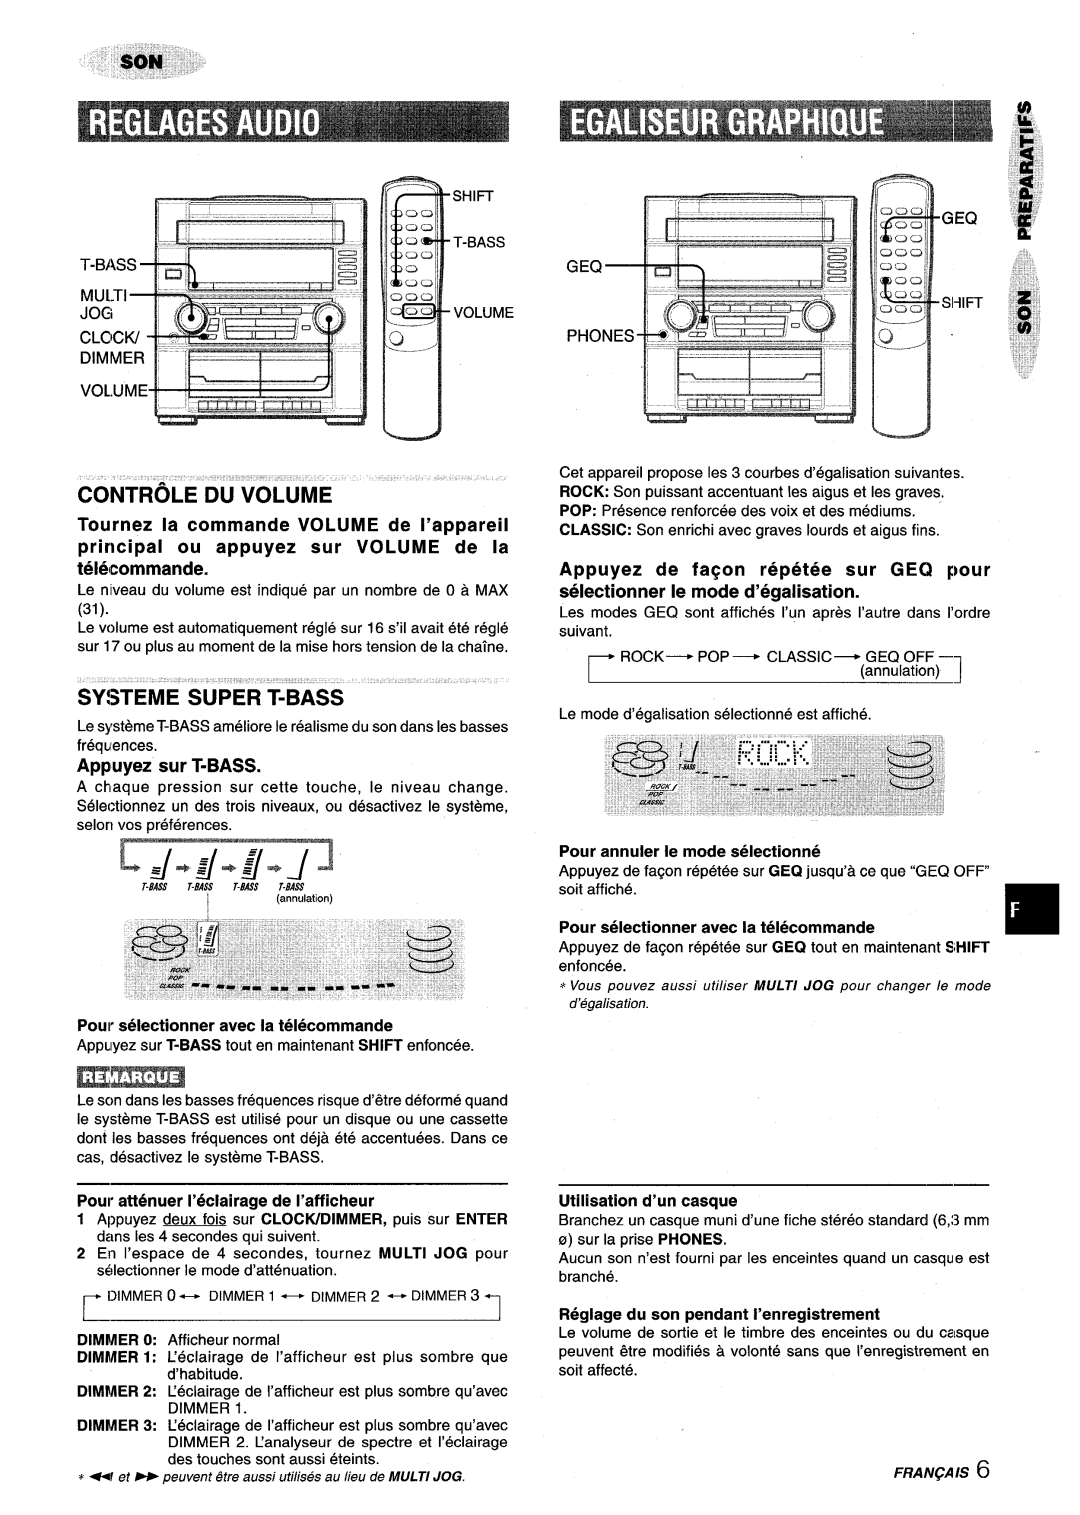 Aiwa XR-M75 Controle Du”Volume, SY!3TEME SUPER T-BASS, ‘LGLzKzJIE&LD, Tournez la commande VOLUME de I’appareil, LJ.&&Js J 